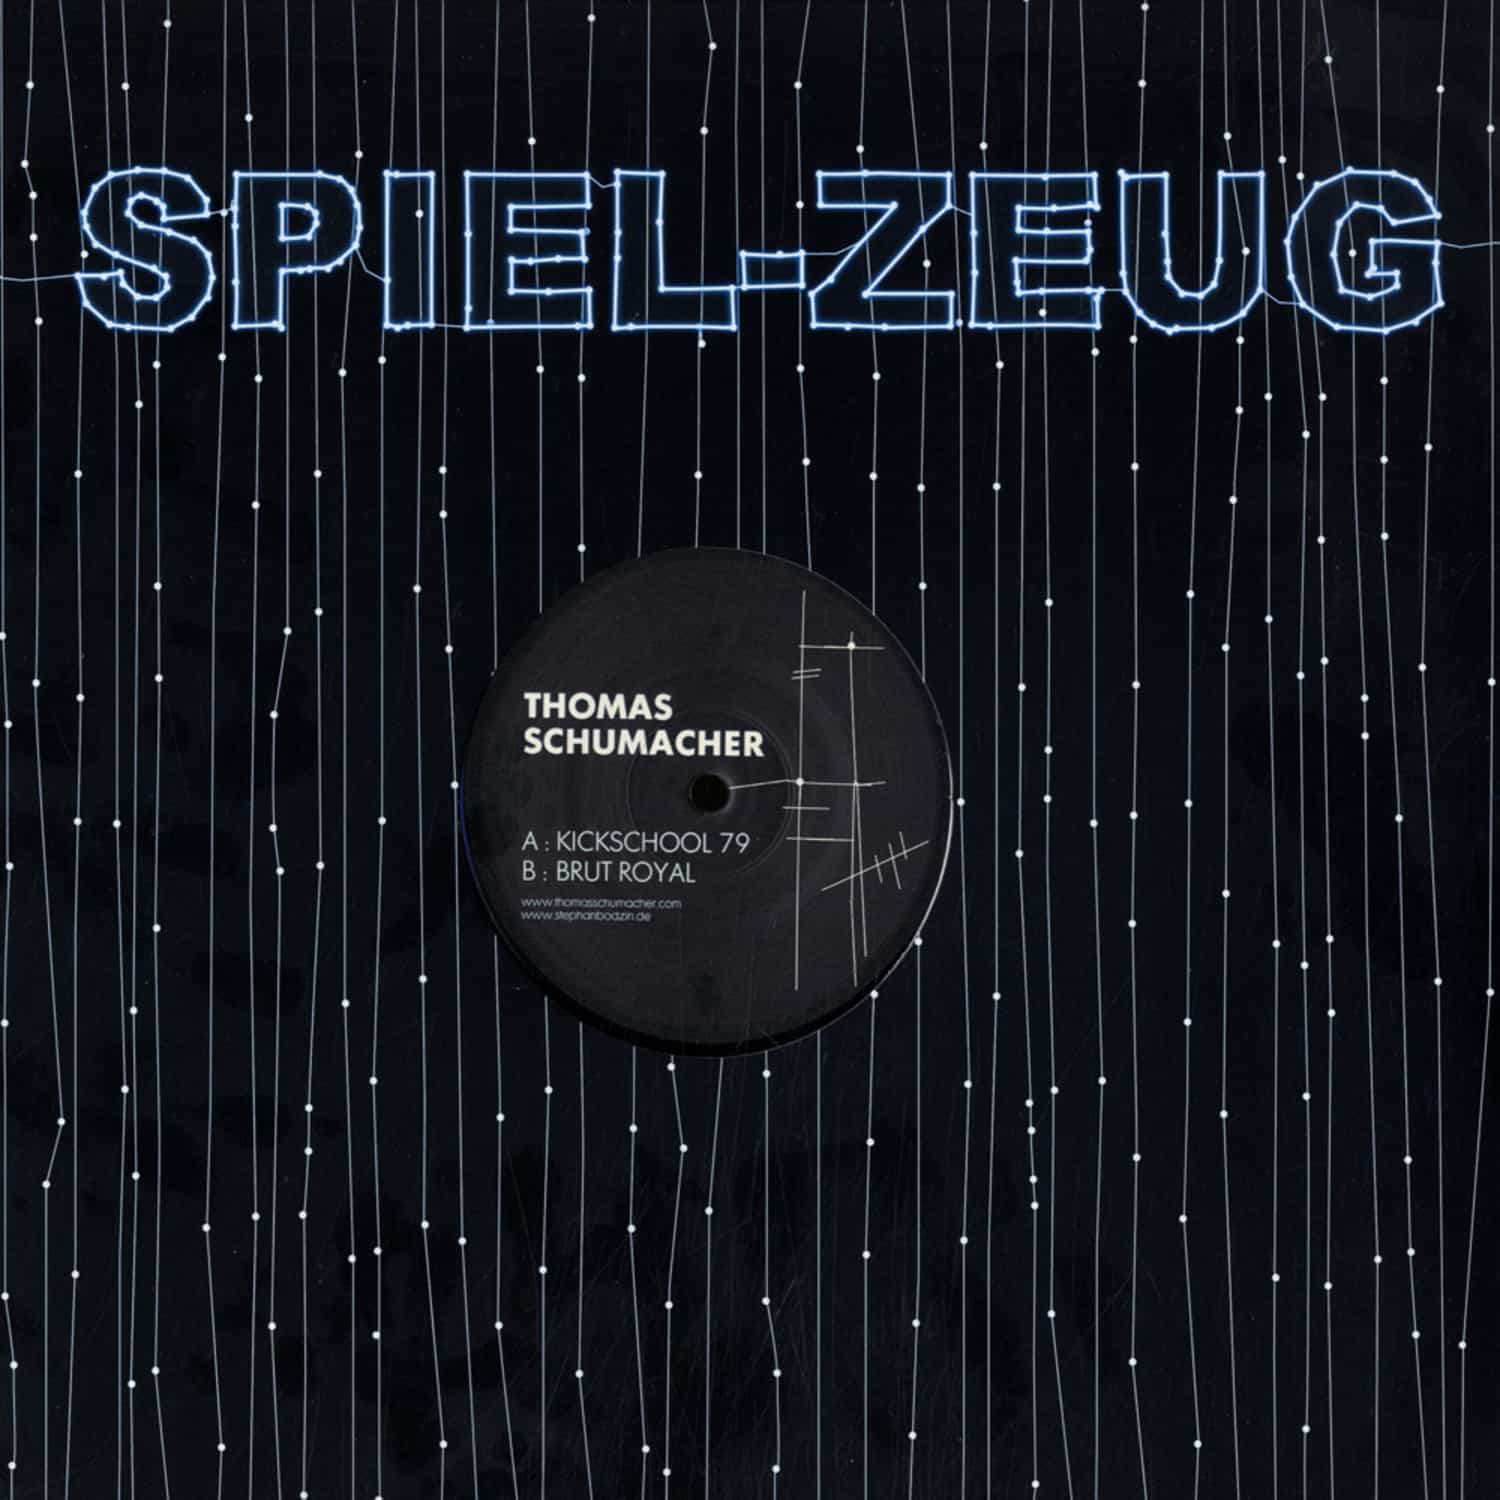 Thomas Schumacher - PERLEN EP